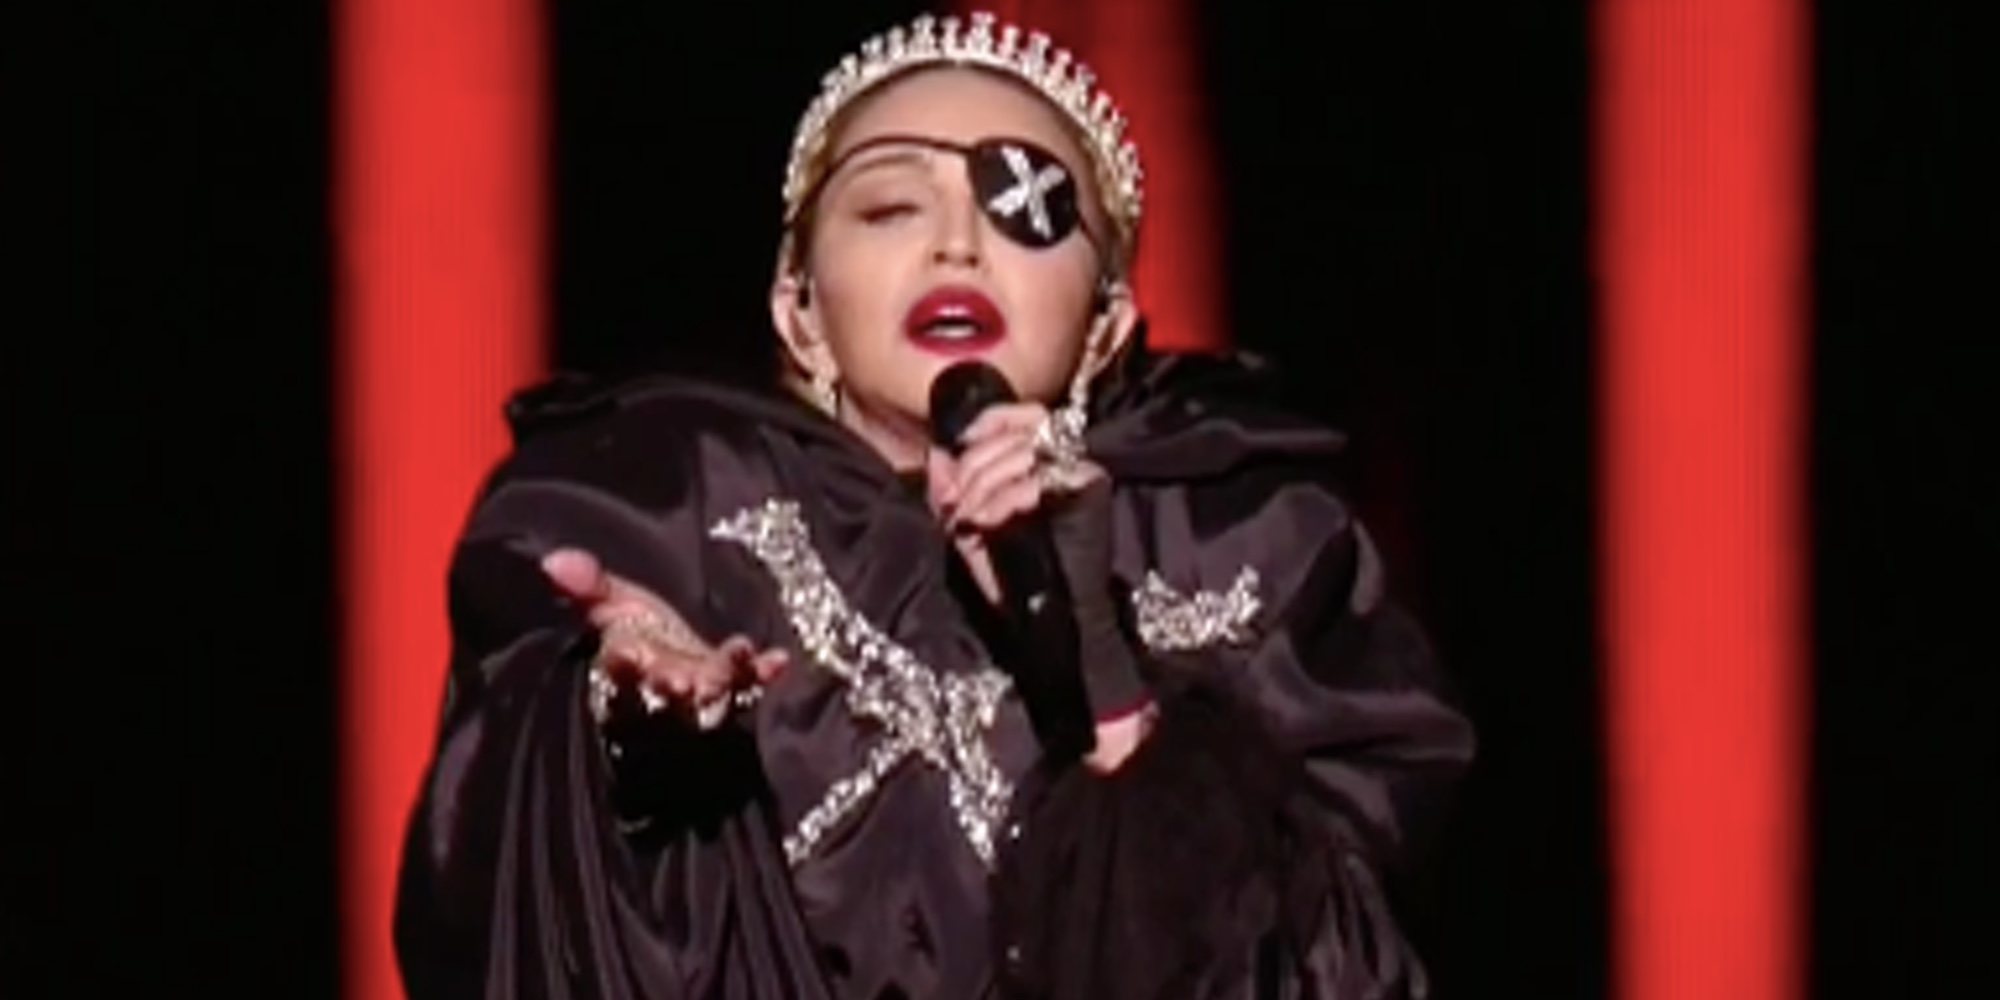 Madonna gana más de un millón de euros en el Festival de Eurovisión 2019 con un mensaje a favor de la música